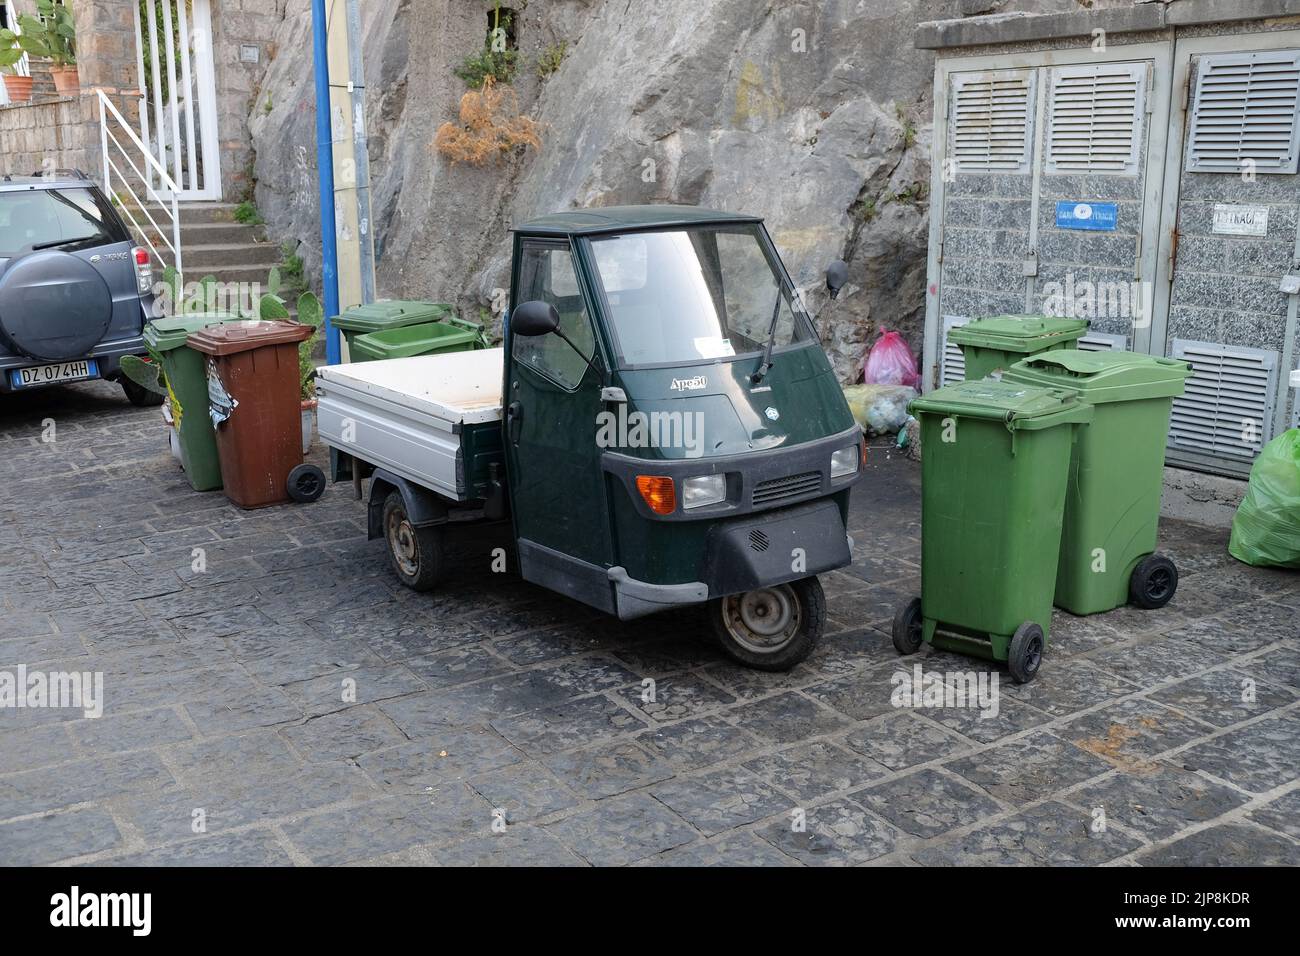 Un véhicule commercial léger de Ape50 fabriqué par le constructeur automobile italien Piaggio, stationné au milieu de poubelles à Sorrente, en Italie. Banque D'Images